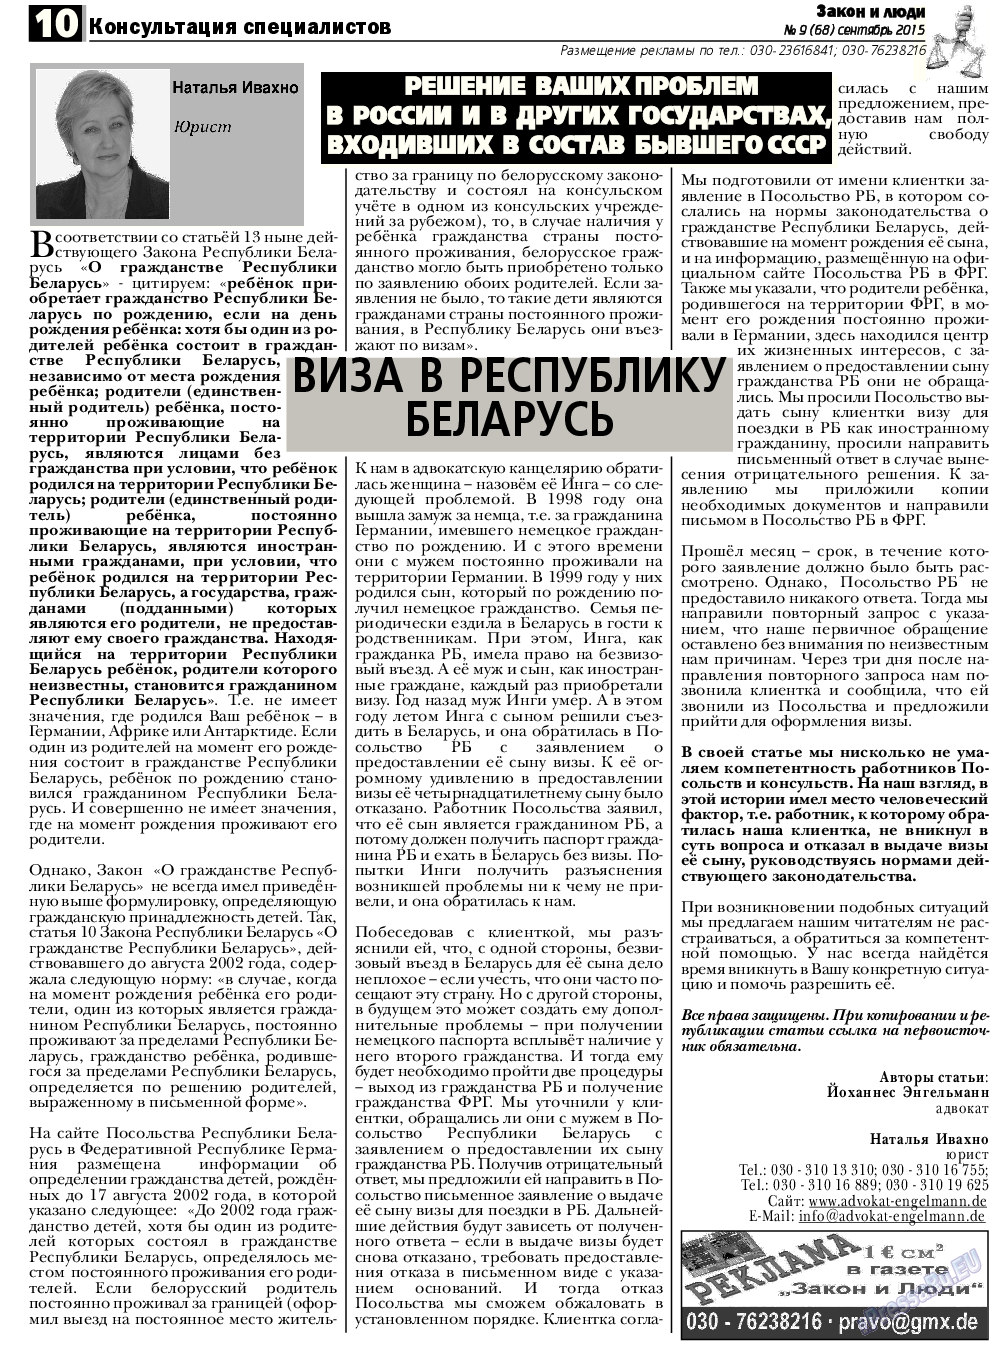 Закон и люди, газета. 2015 №9 стр.10